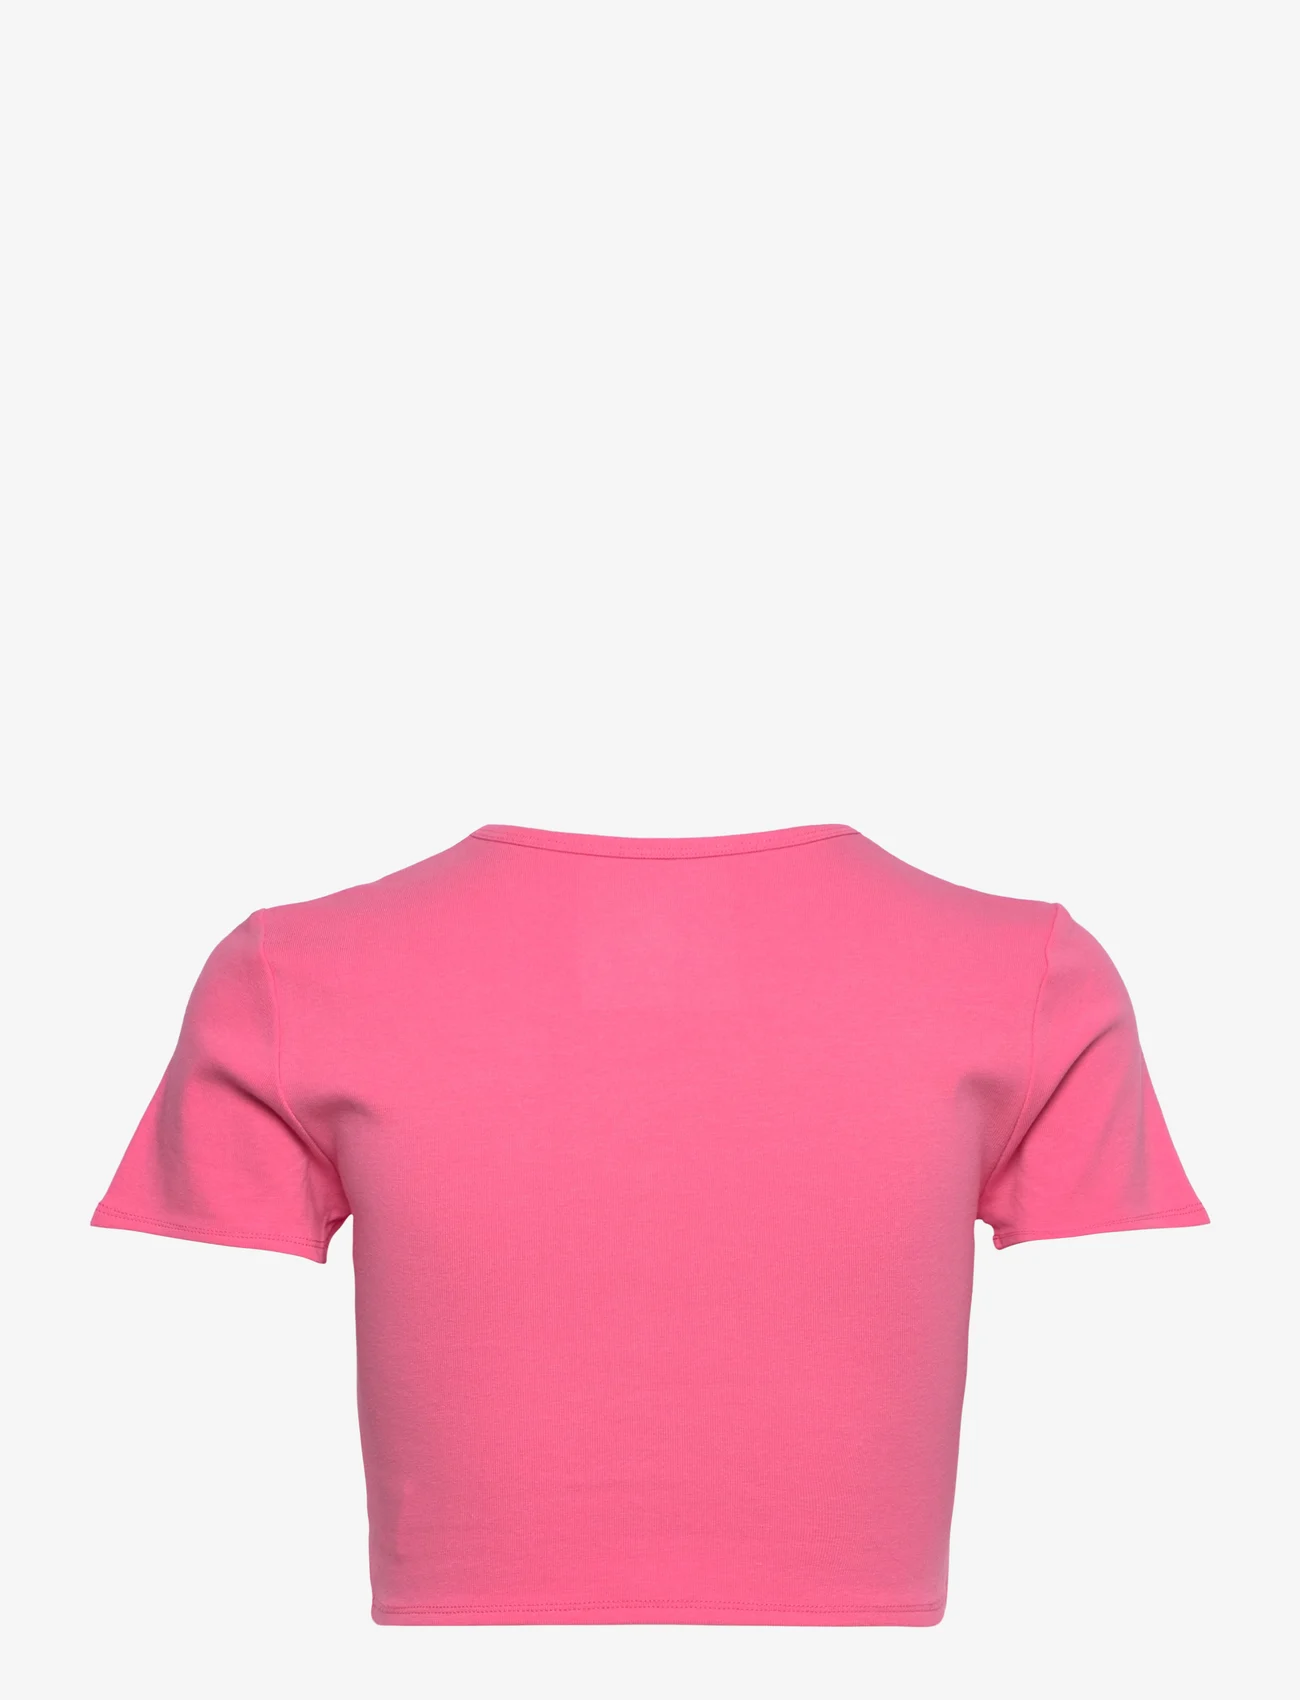 Barbara Kristoffersen by Rosemunde - T-shirt - crop tops - camellia rose - 1